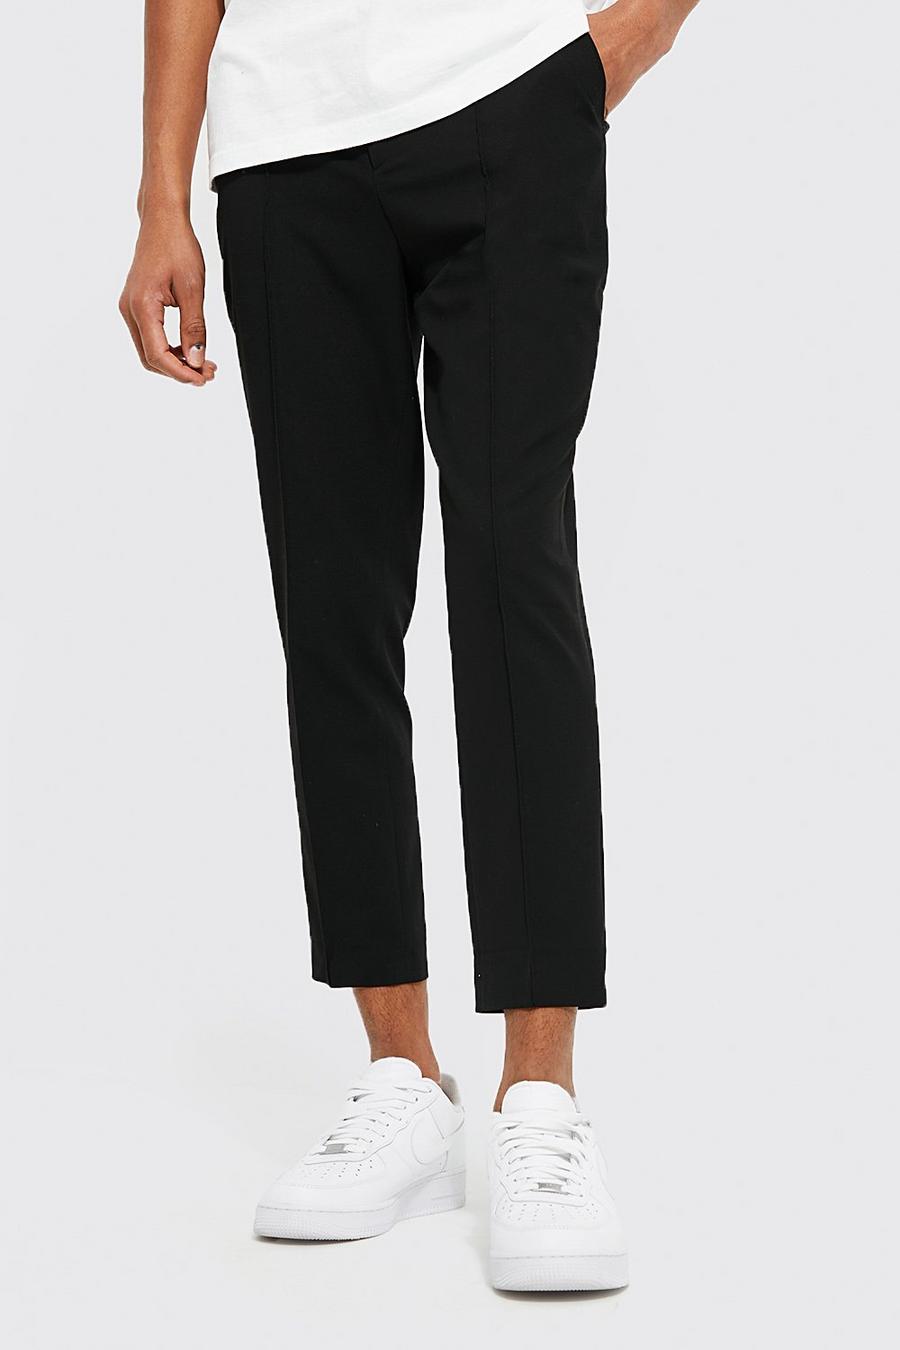 Black noir Skinny Plain Tapered Smart Trouser With Pintuck